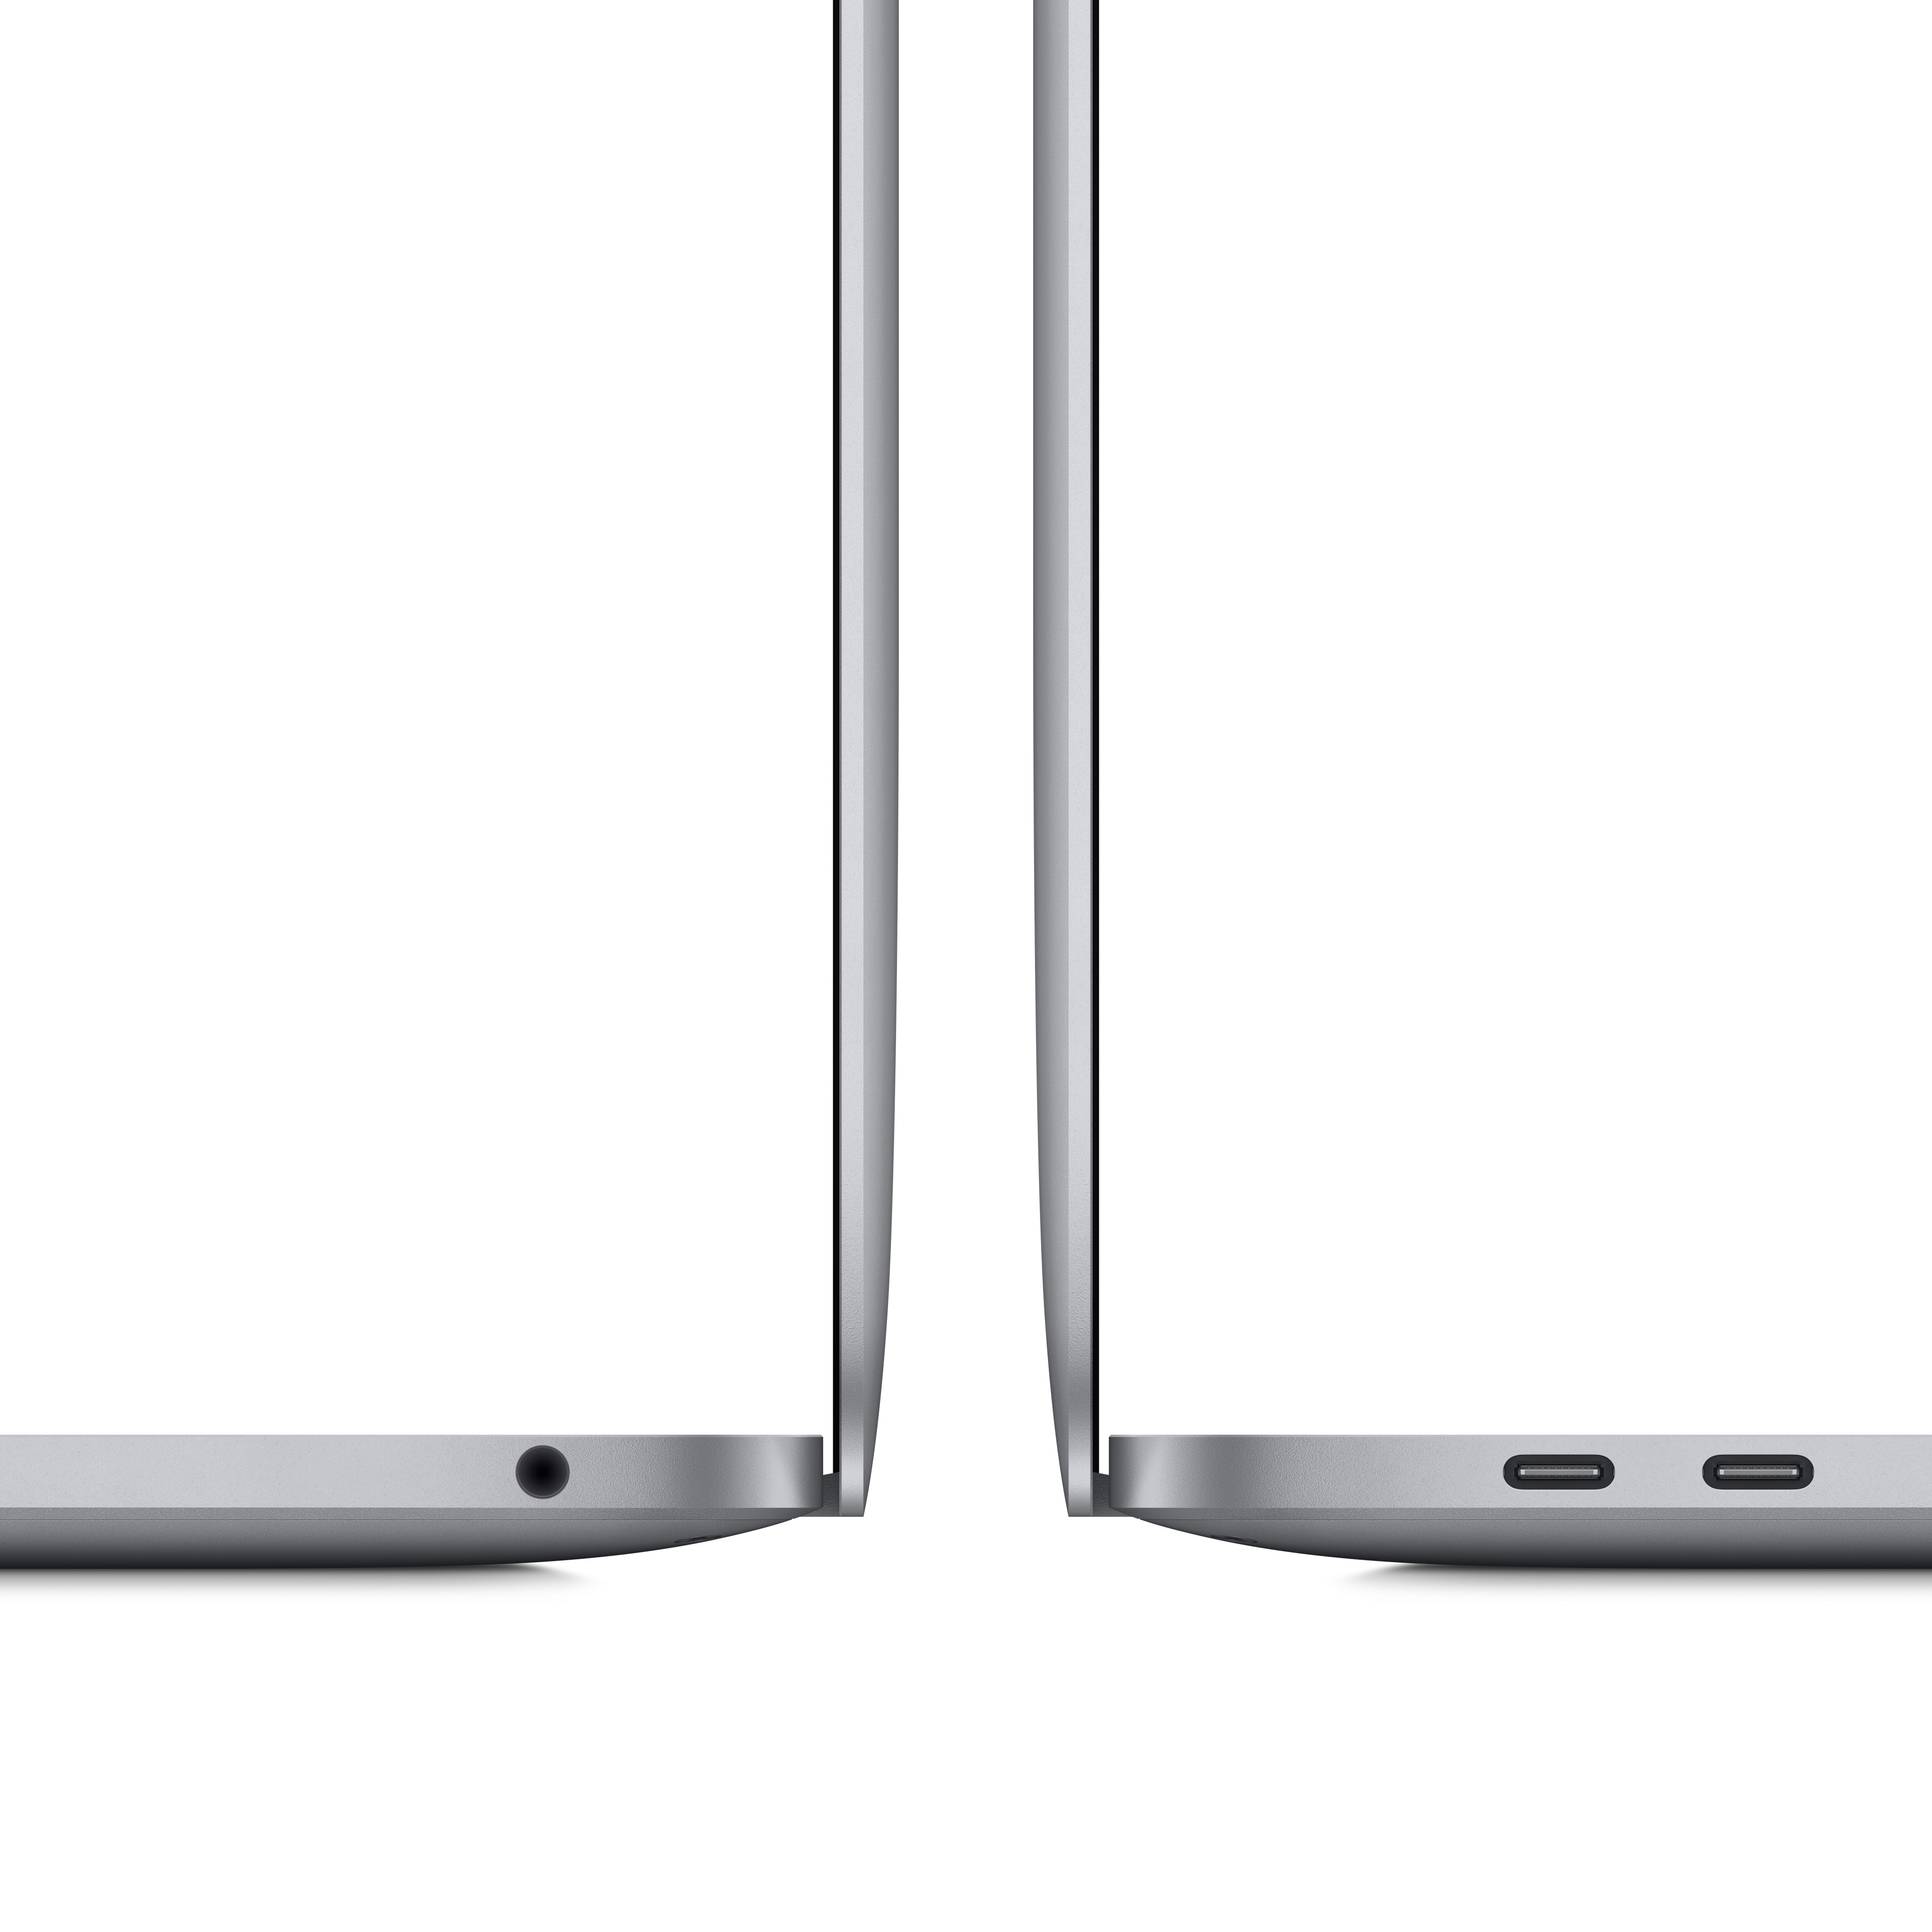 Apple MacBook Pro - M1 - M1 8-core GPU - 8GB RAM - 512GB SSD